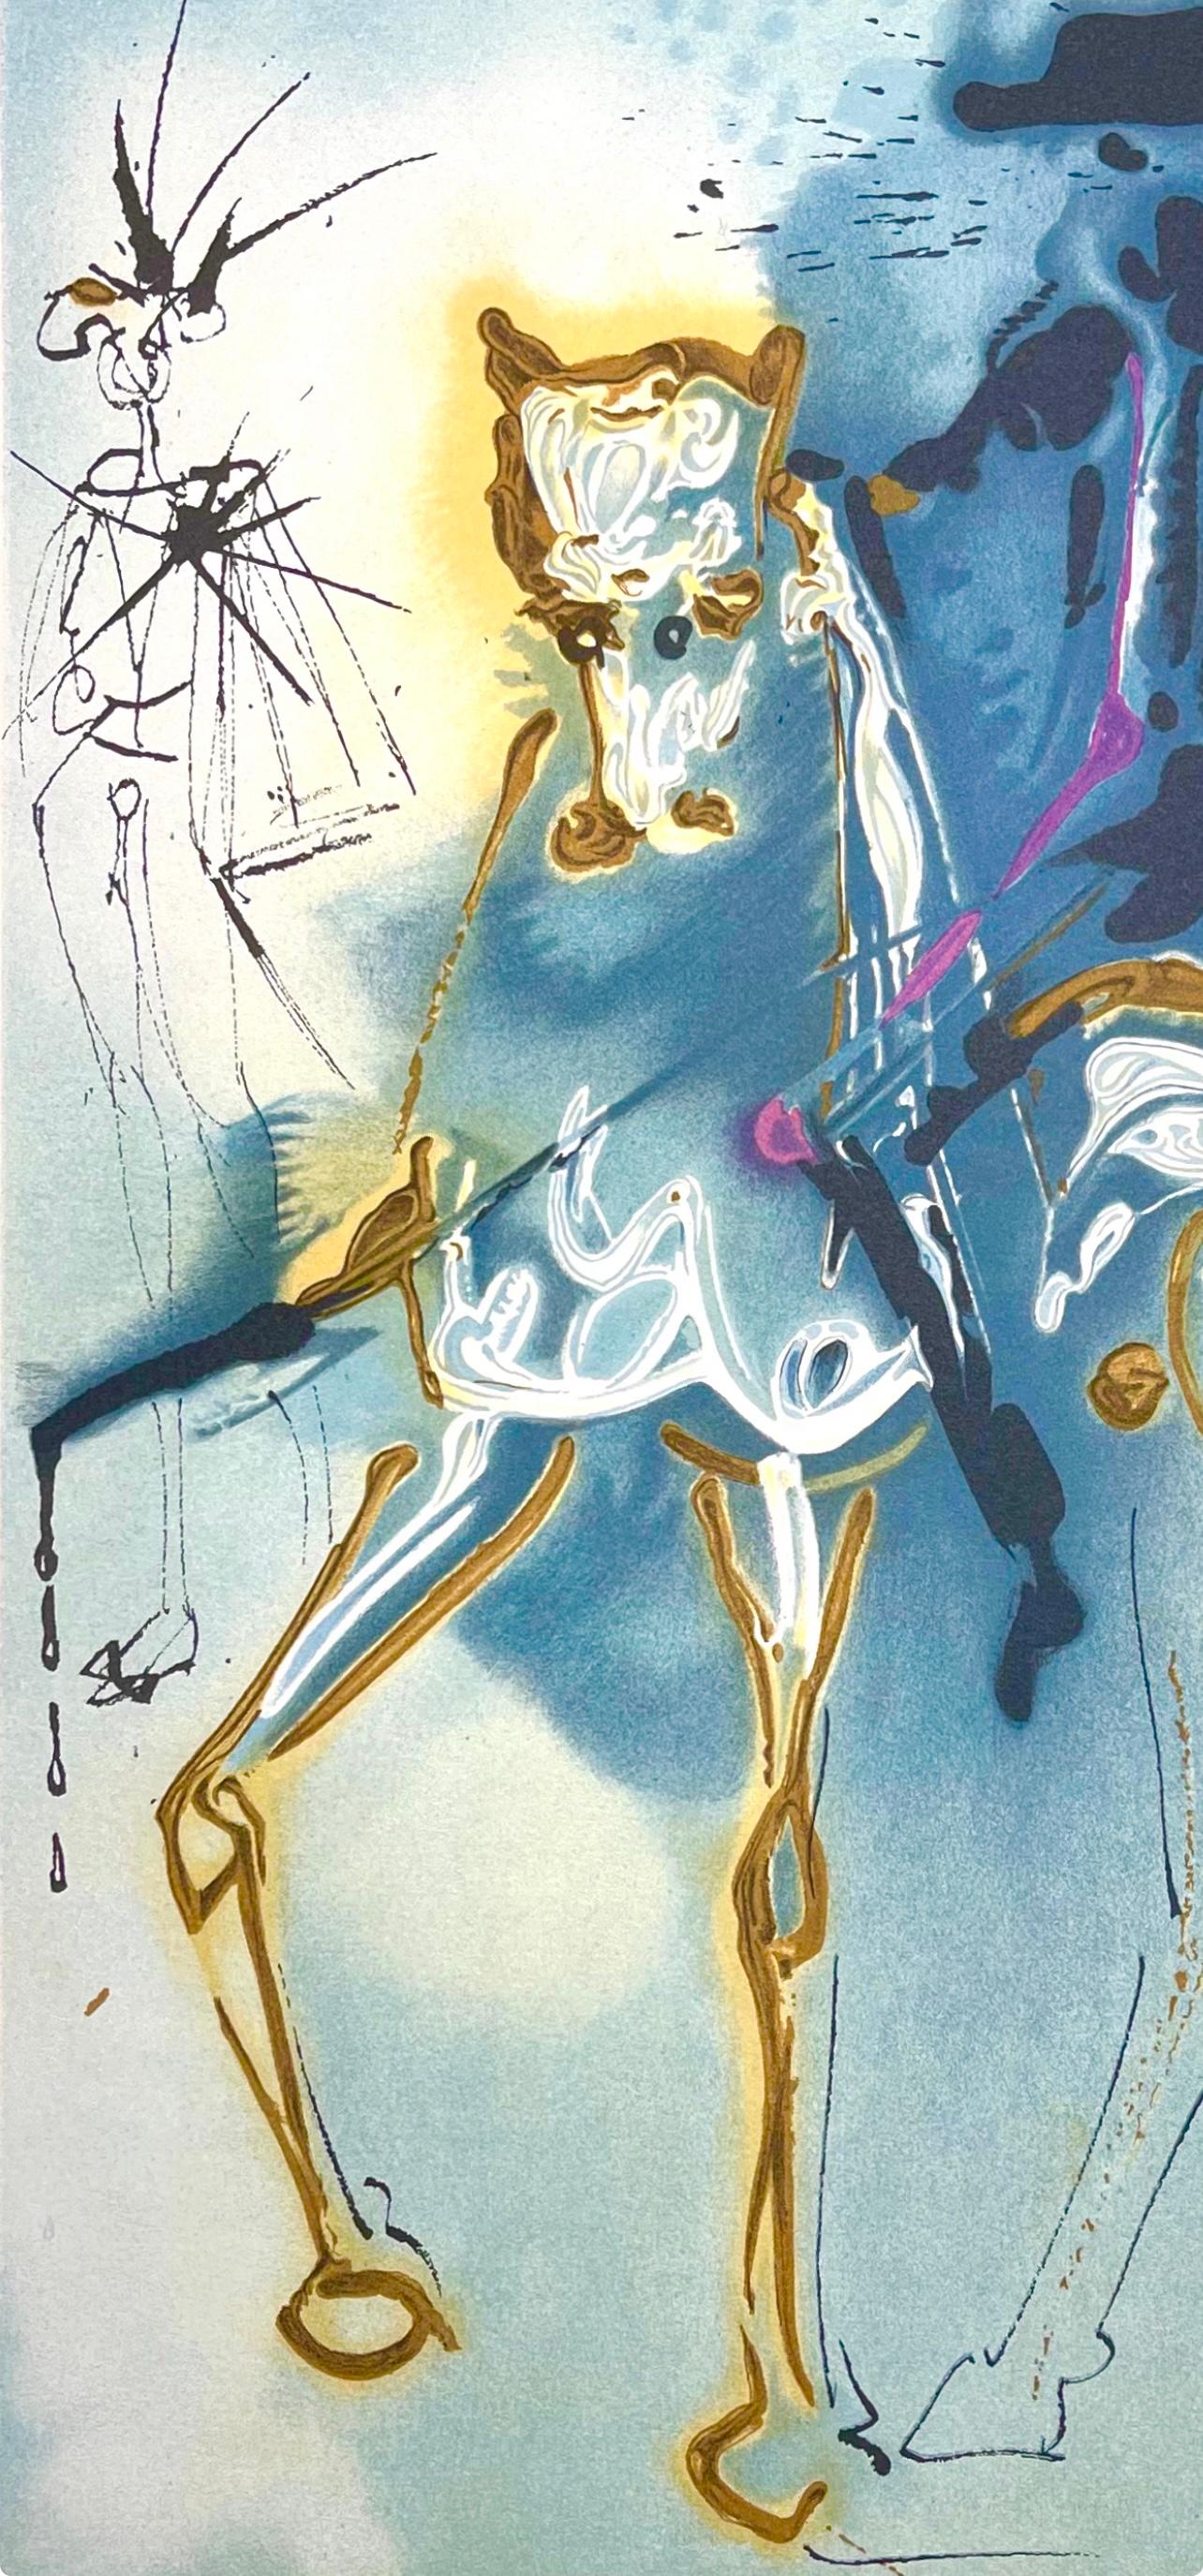 Dalí, Picador, Les Chevaux de Dali (d'après) - Print de Salvador Dalí